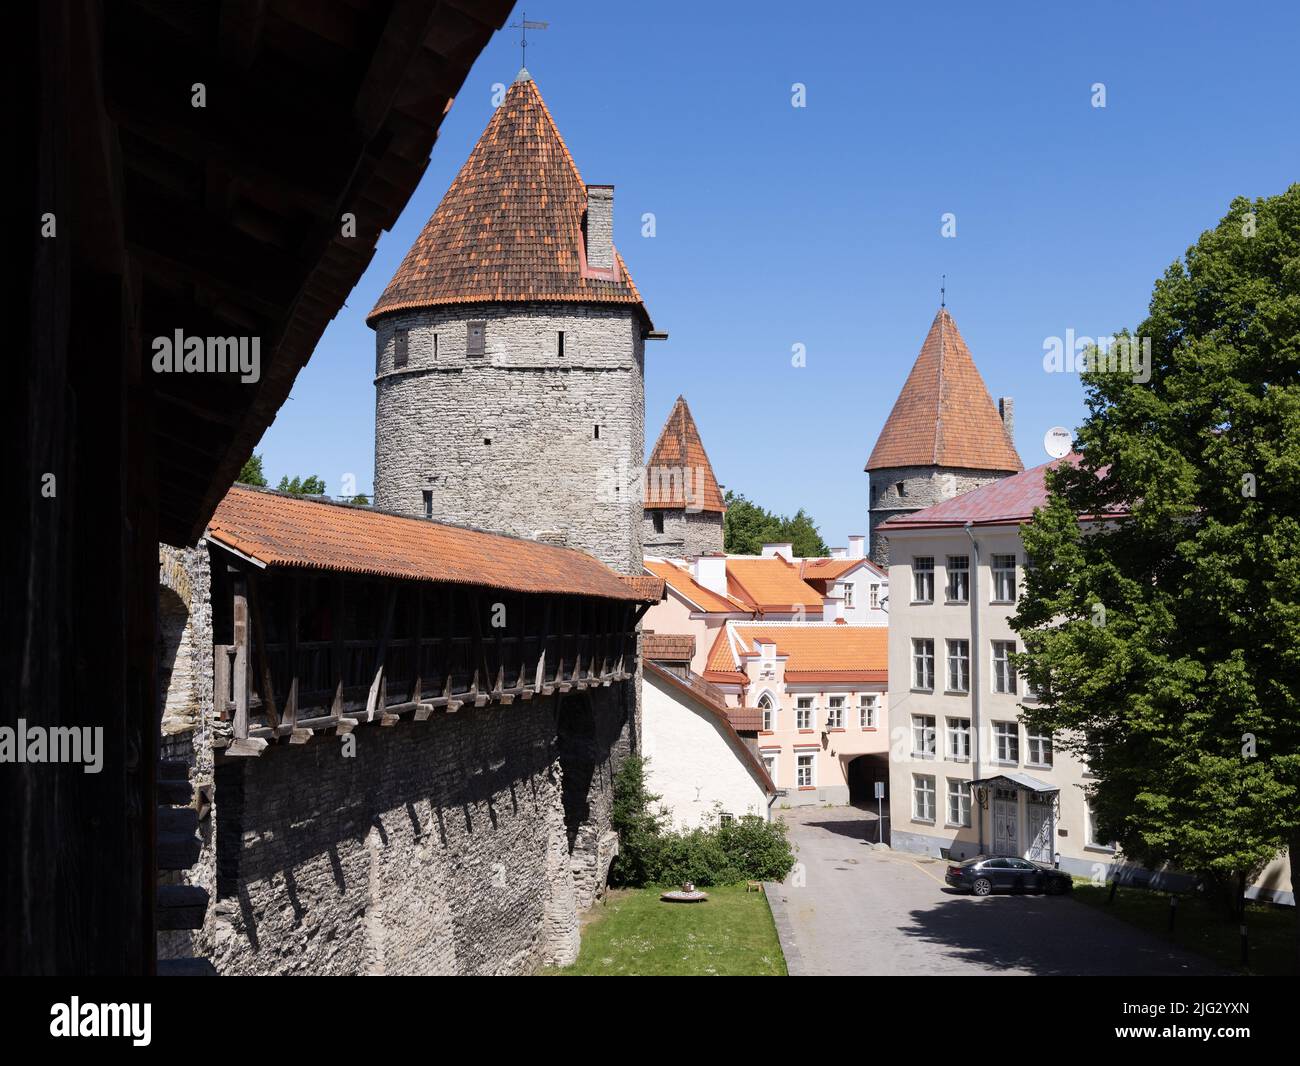 Tallinns Stadtmauer, ein Teil der mittelalterlichen Festung aus dem 13.. Jahrhundert mit dem Nonnen-Turm, Weltkulturerbe; Tallinns Altstadt, Tallinn Estland Stockfoto